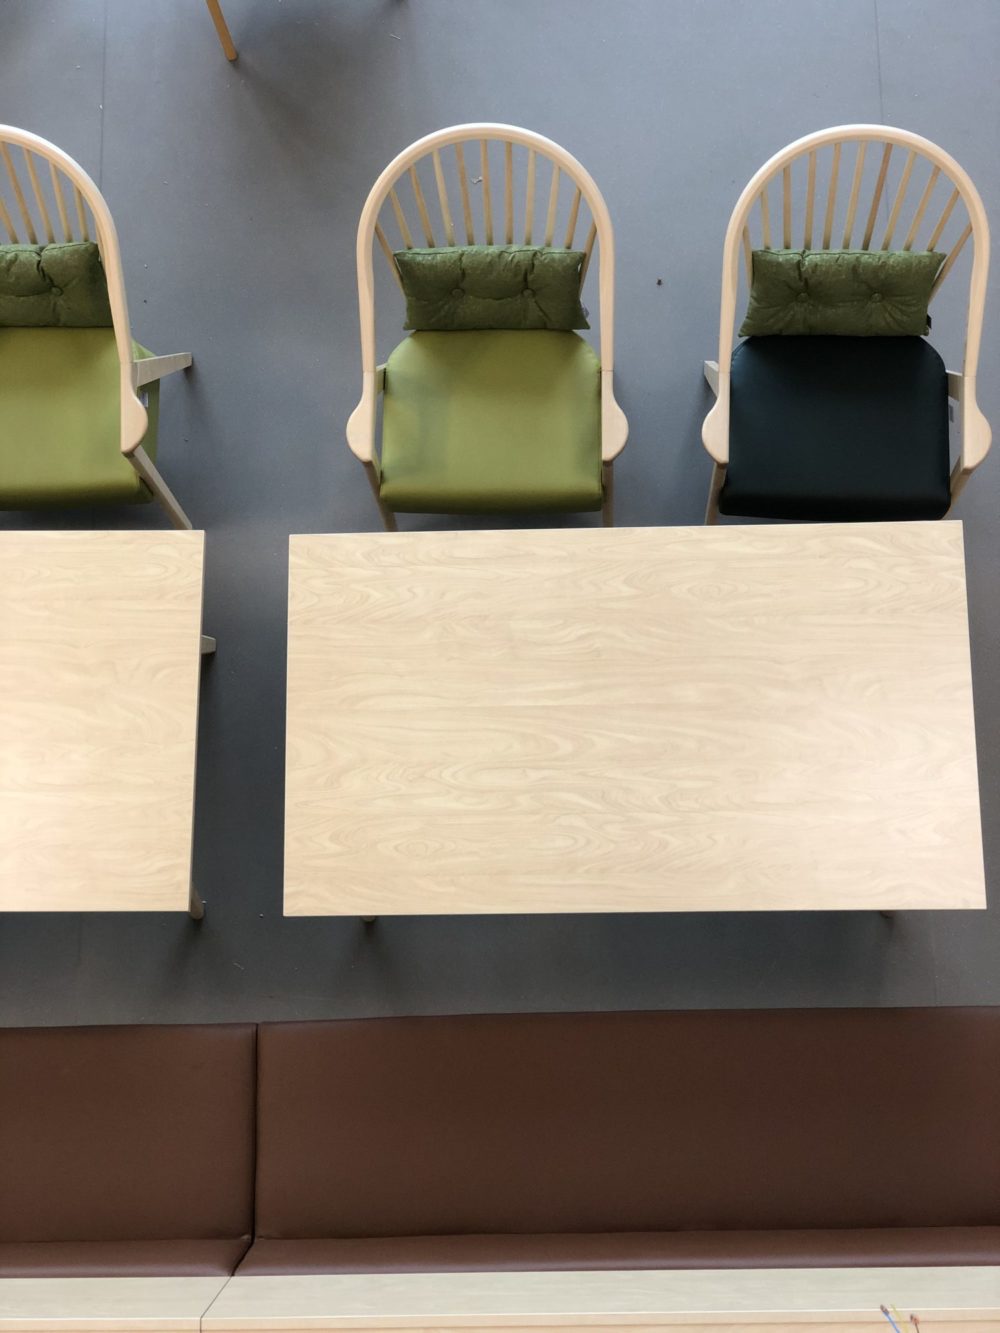 Sitteplasser i inngangsparti på omsorgs- og aktivitetssenter i Mosvik. Grønn og brun fargepalett på møblene. 